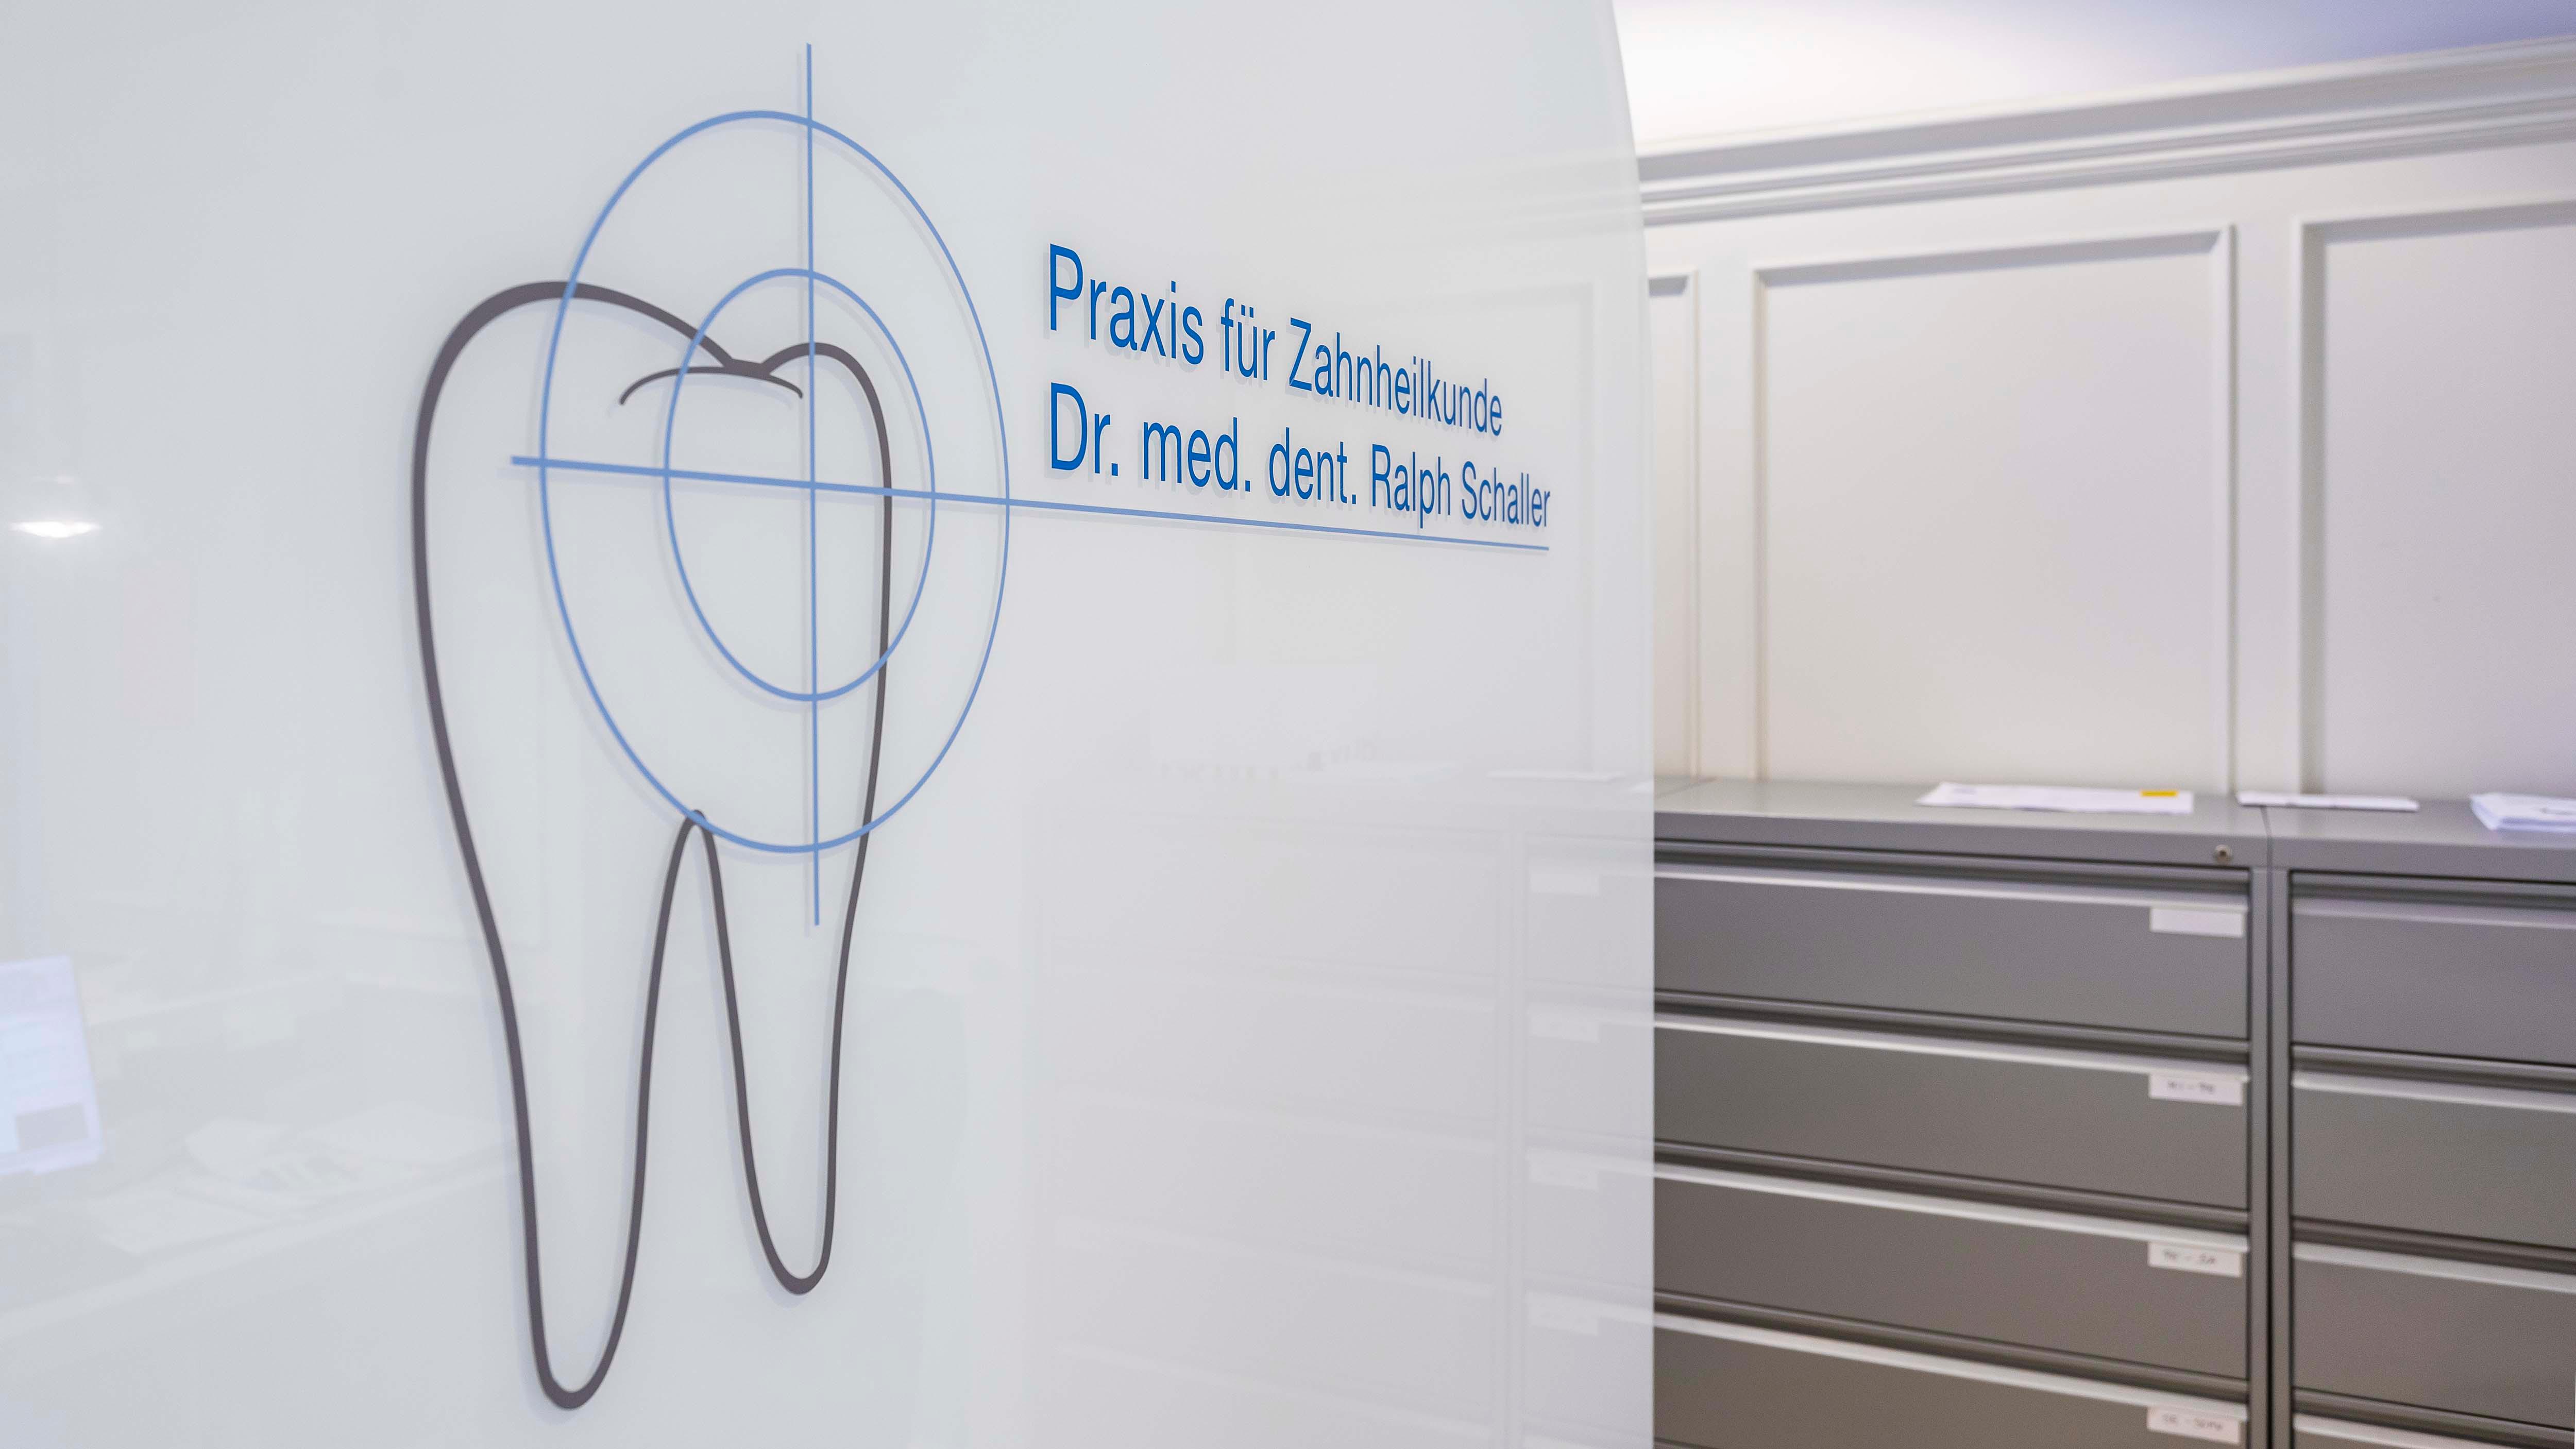 Praxis für Zahnheilkunde Dr. Ralph Schaller | Zahnarzt Düsseldorf, Apollinarisstr. 28 in Düsseldorf